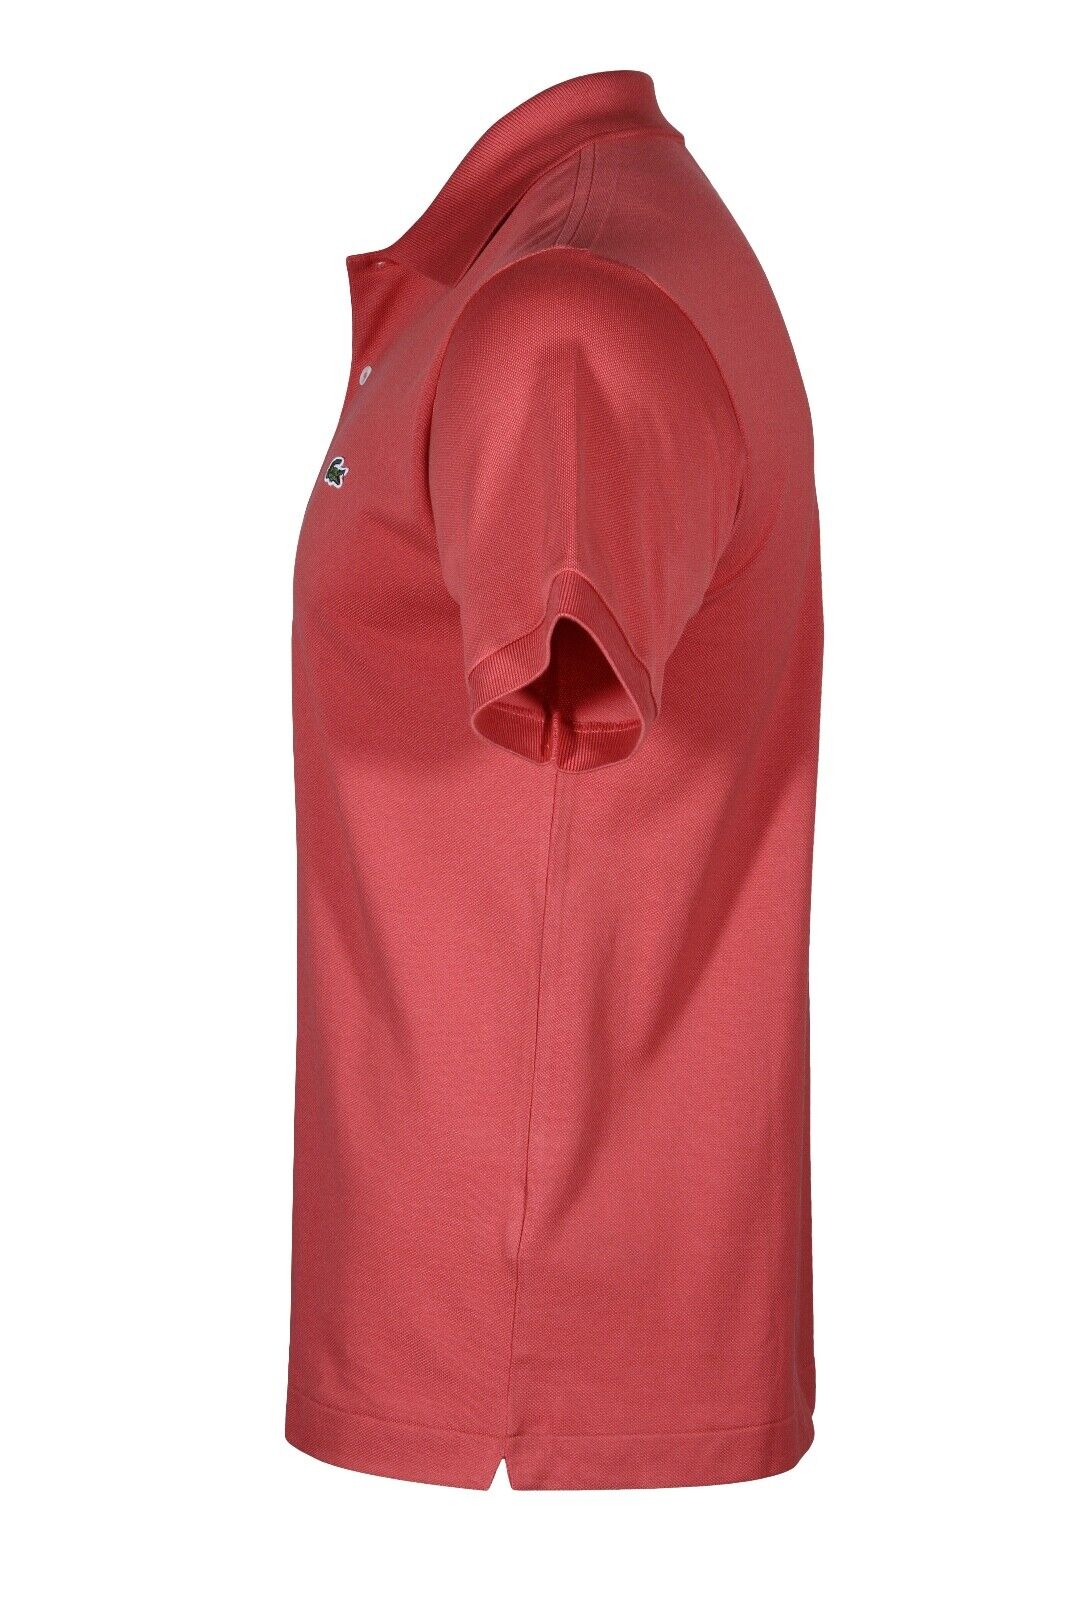 Lacoste Men's Original L.12.12 Petit Piqué Polo Shirt in Sierra Red L1212-51 ZV9